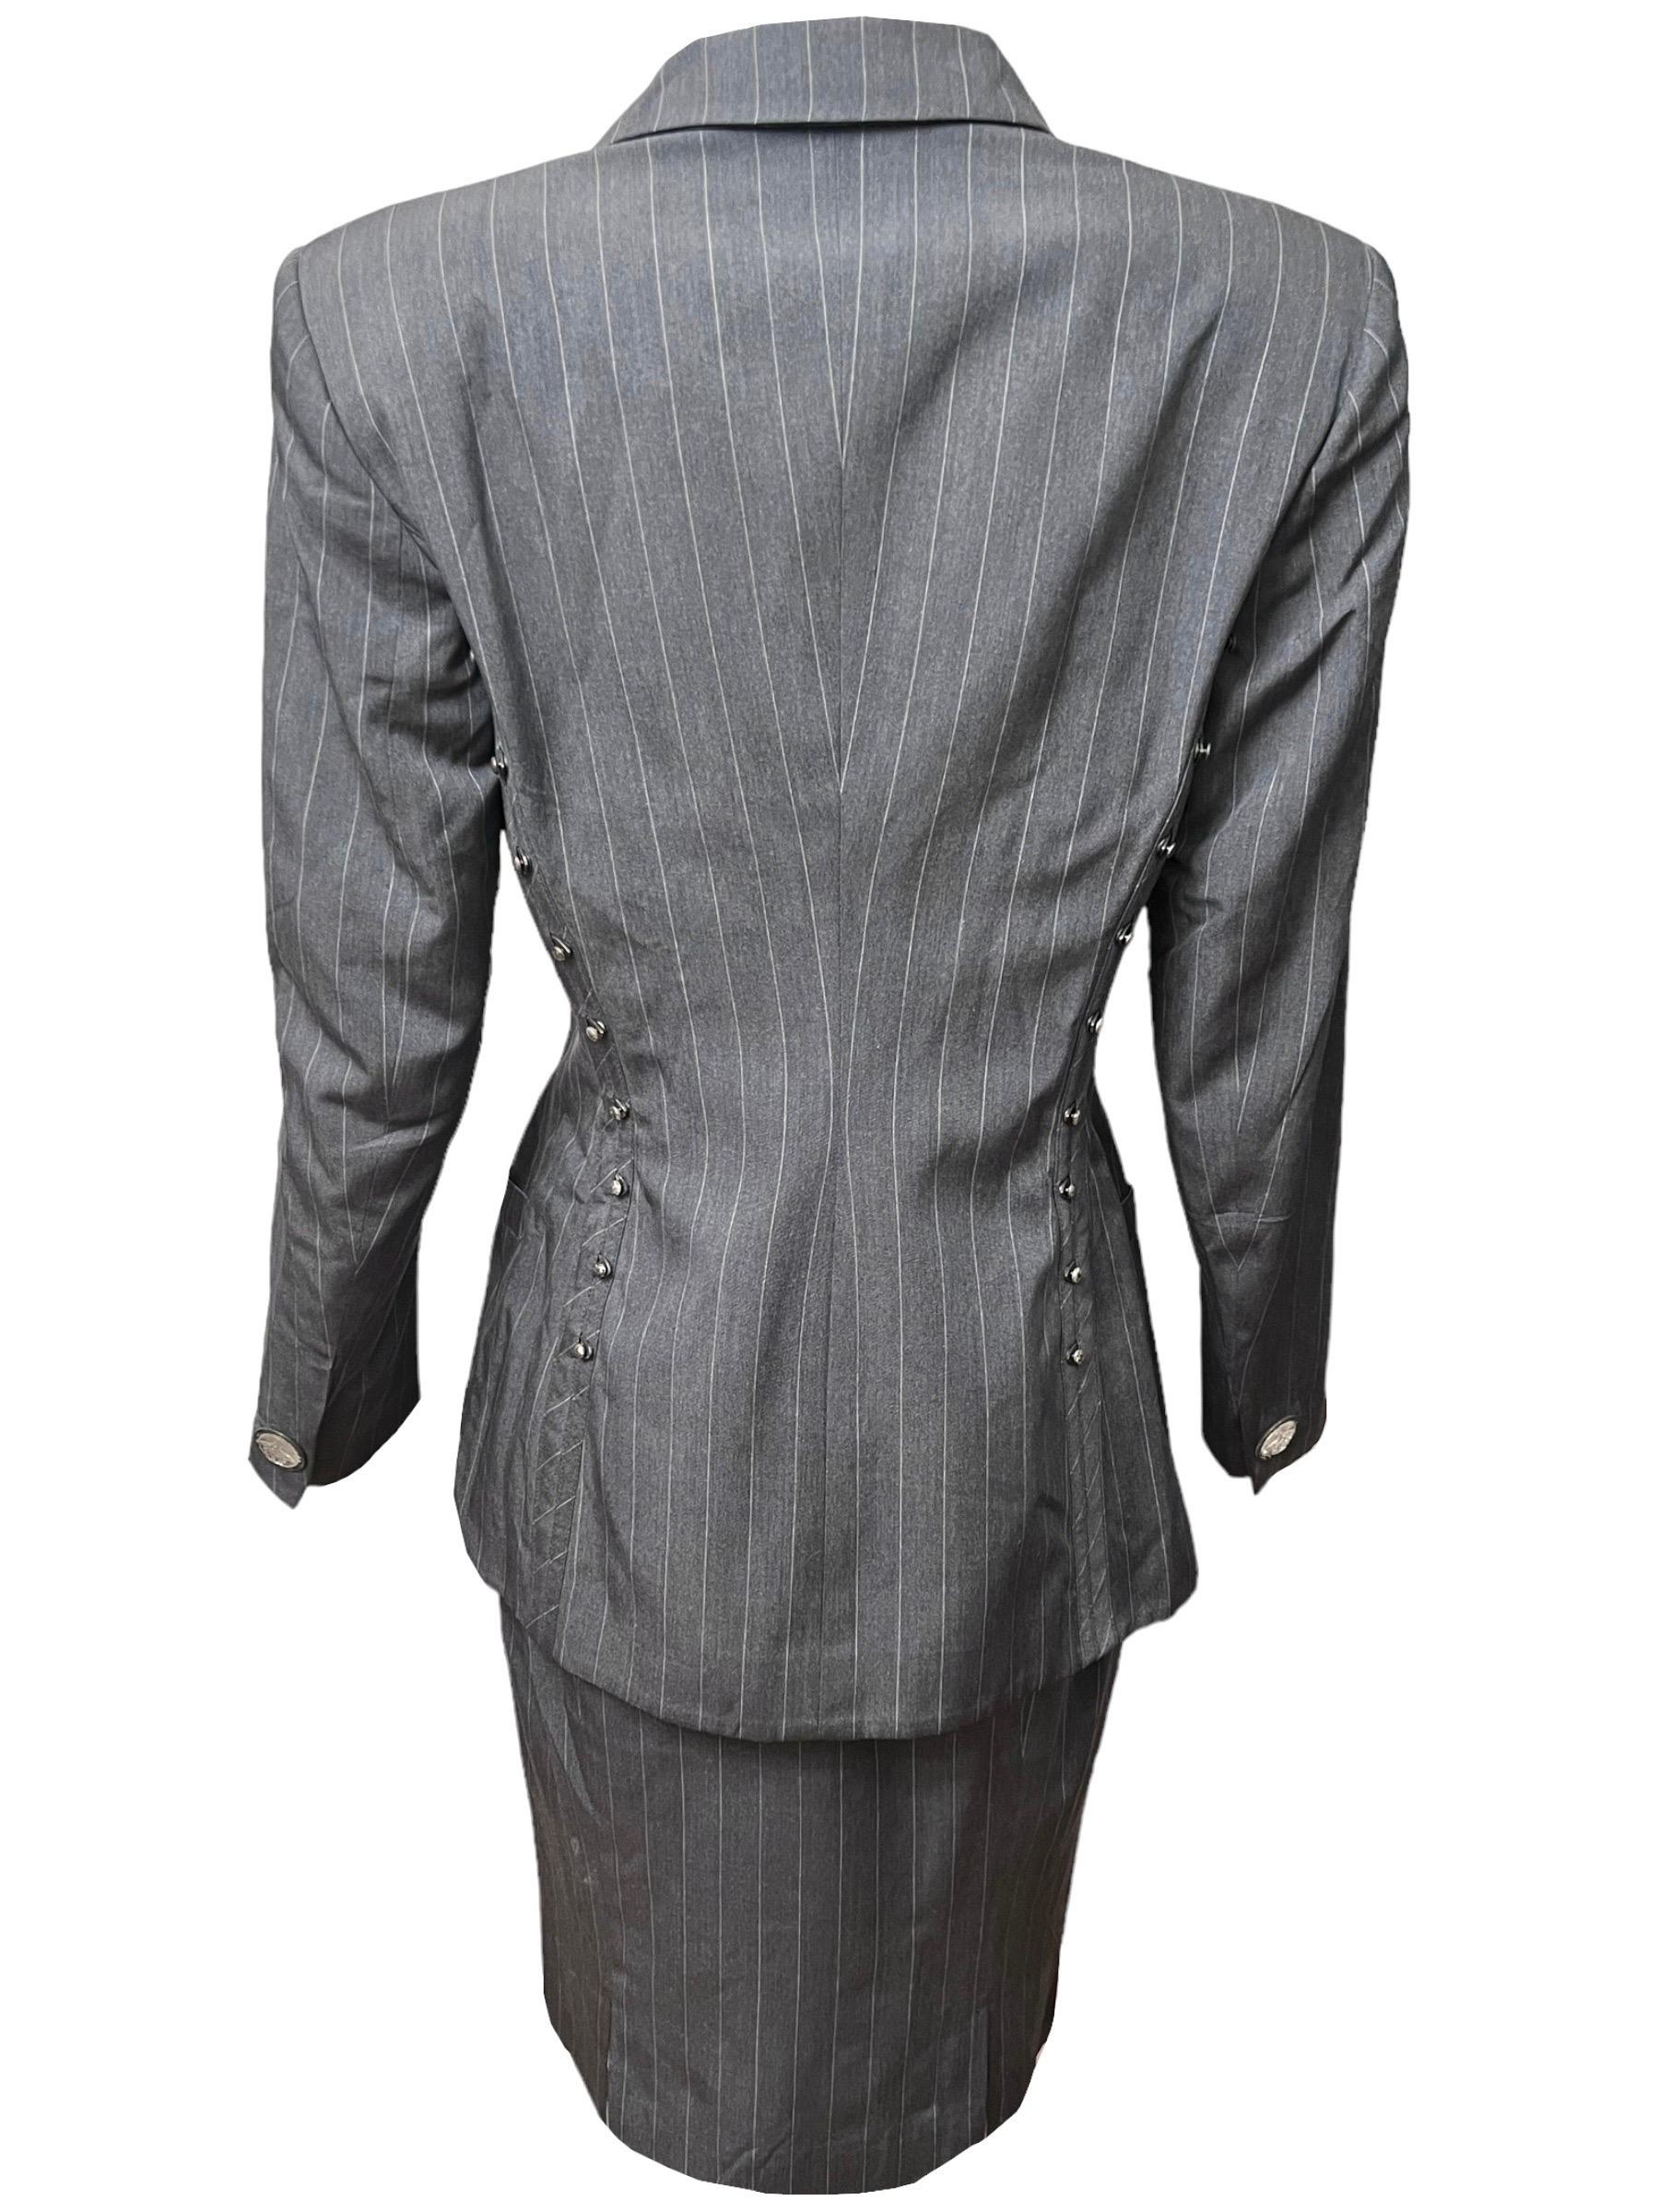 S/S 1995 Gianni Versace Runway Gray Pinstripe Medusa Medallion Skirt Suit For Sale 3